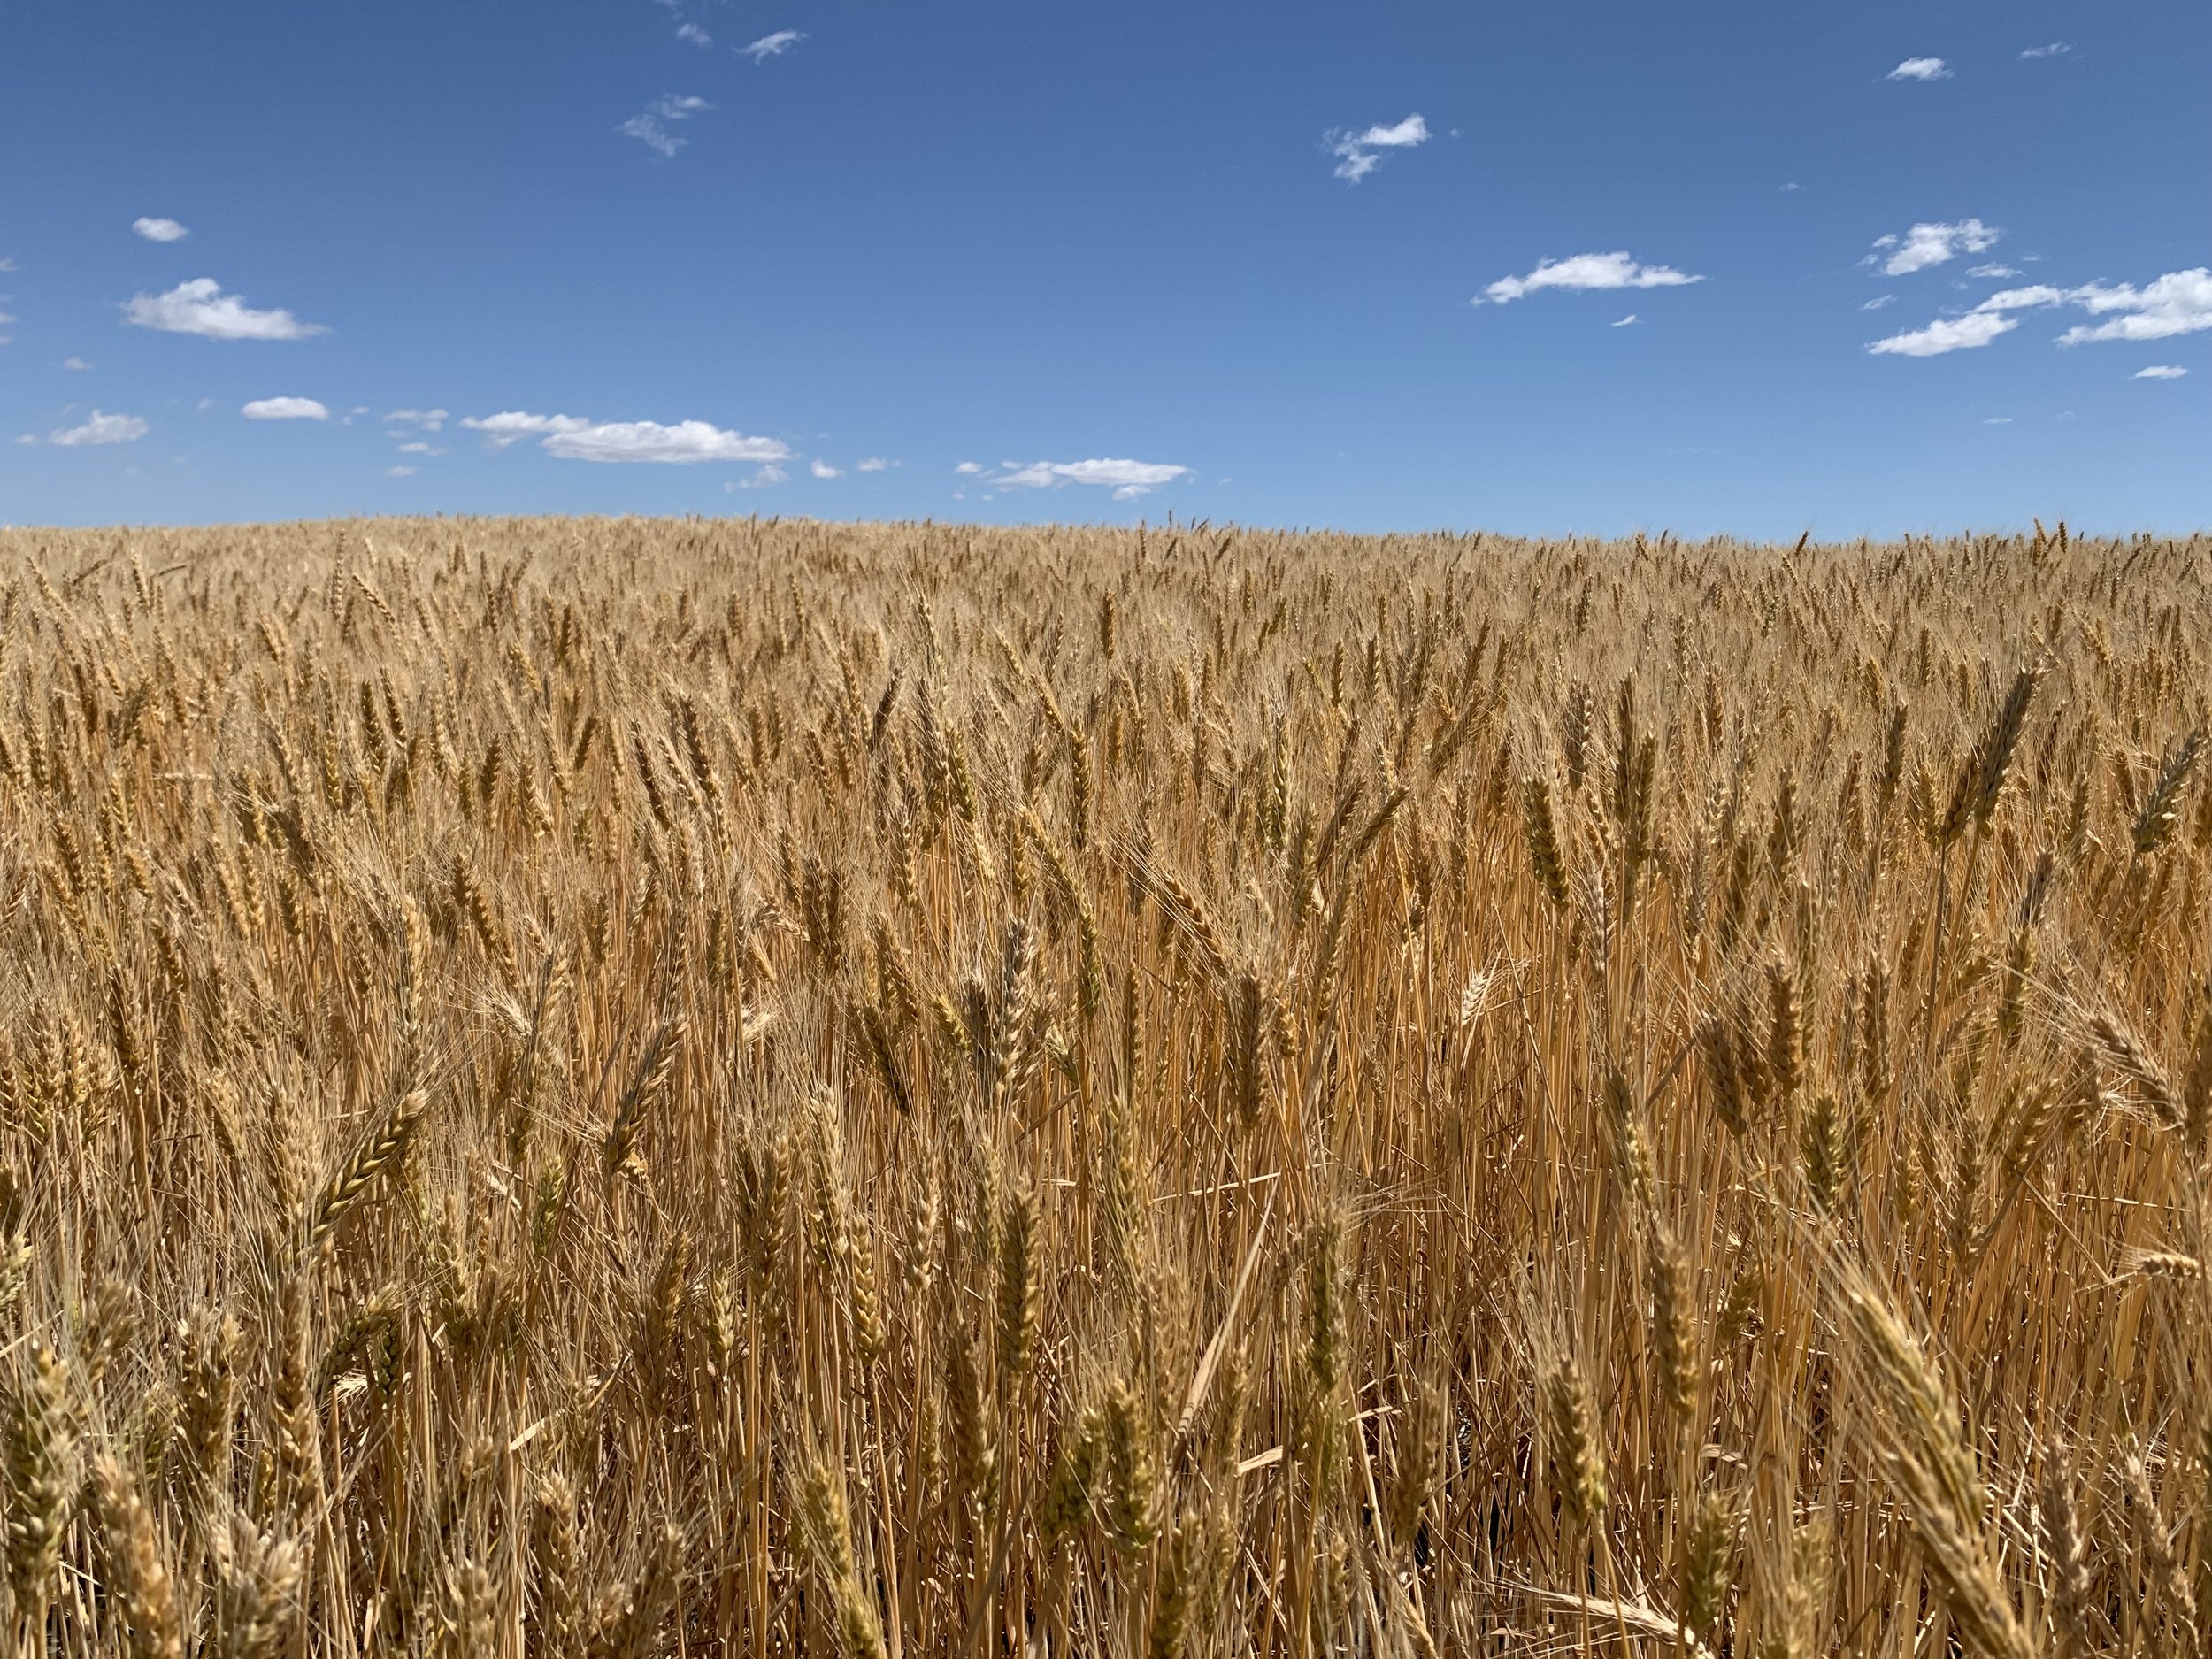  Grain fields 